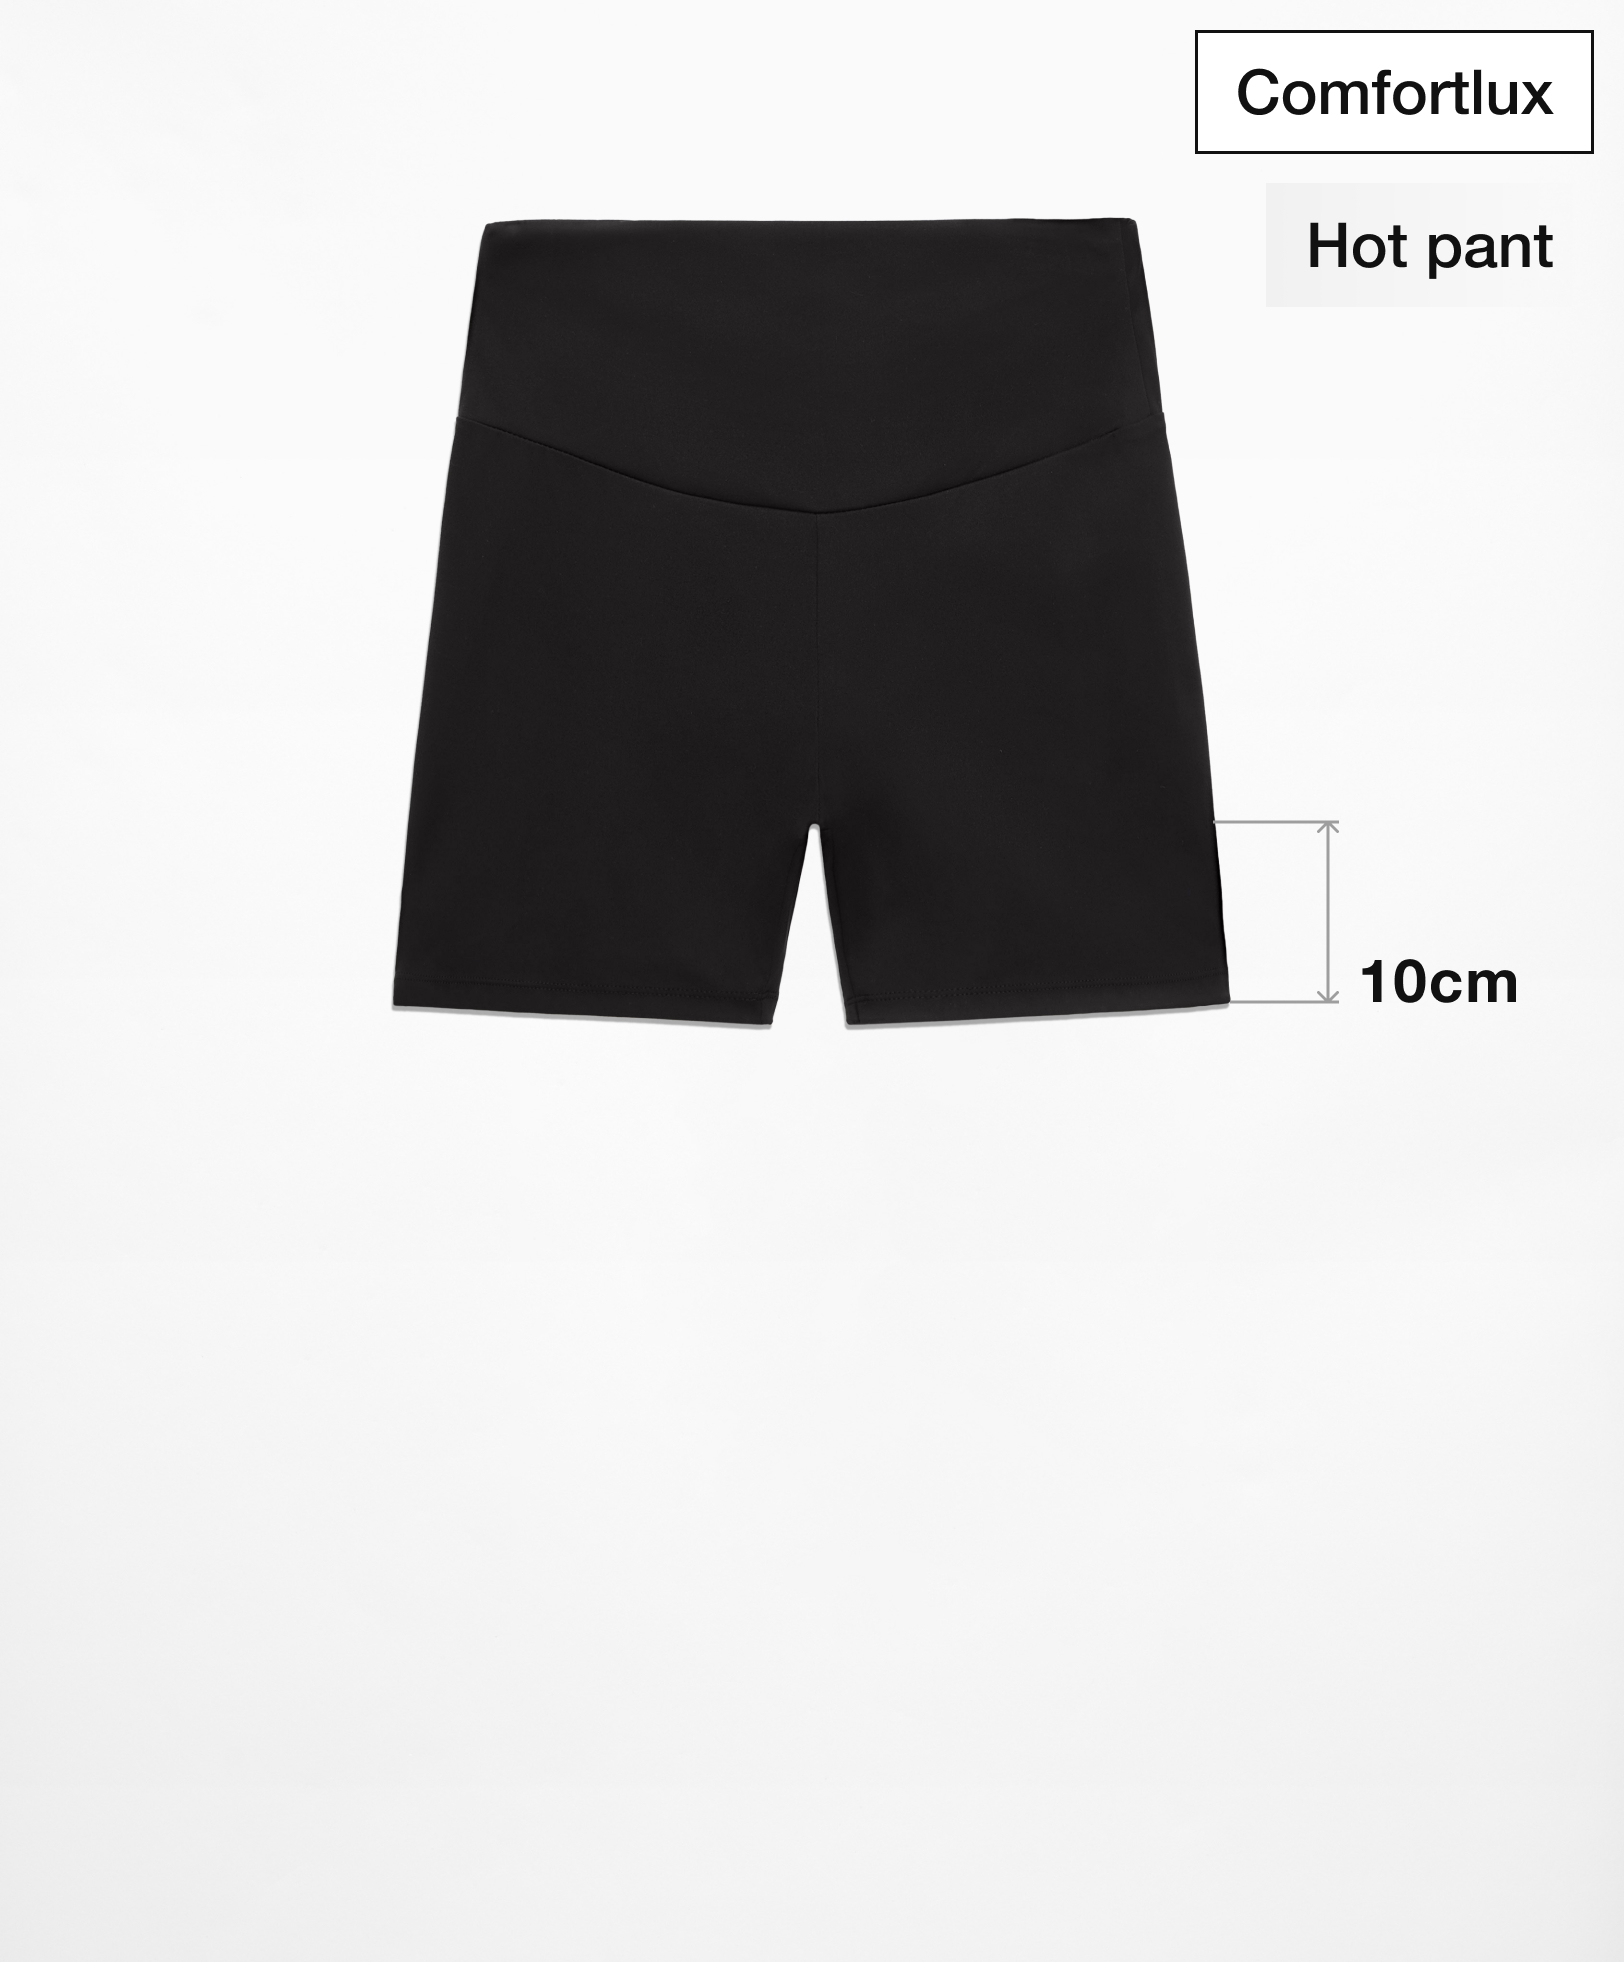 Hot pants high rise comfortlux 10 cm